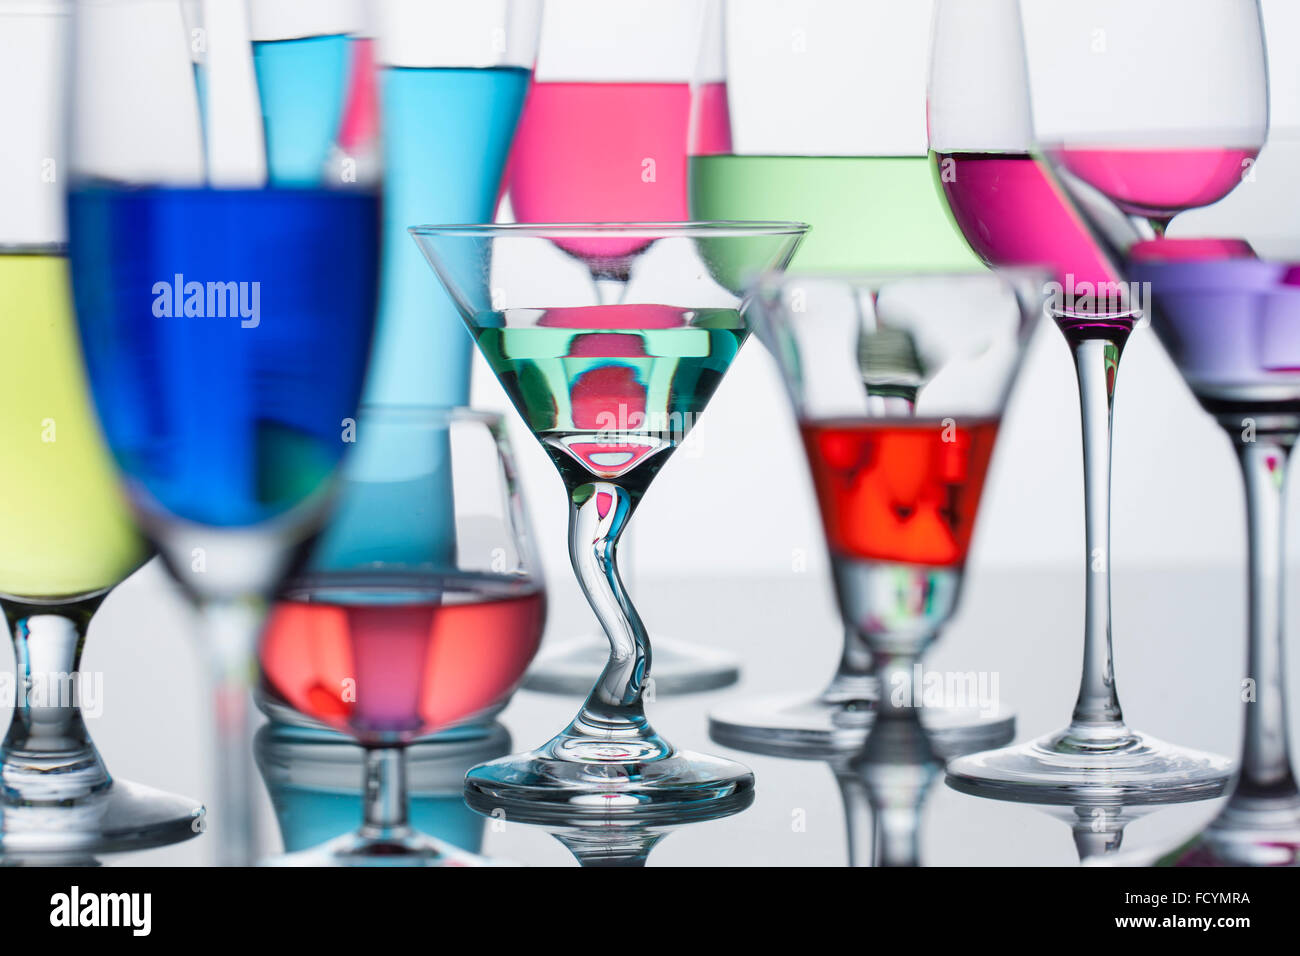 Différents types de verres pour boire avec un liquide coloré dans chaque Banque D'Images